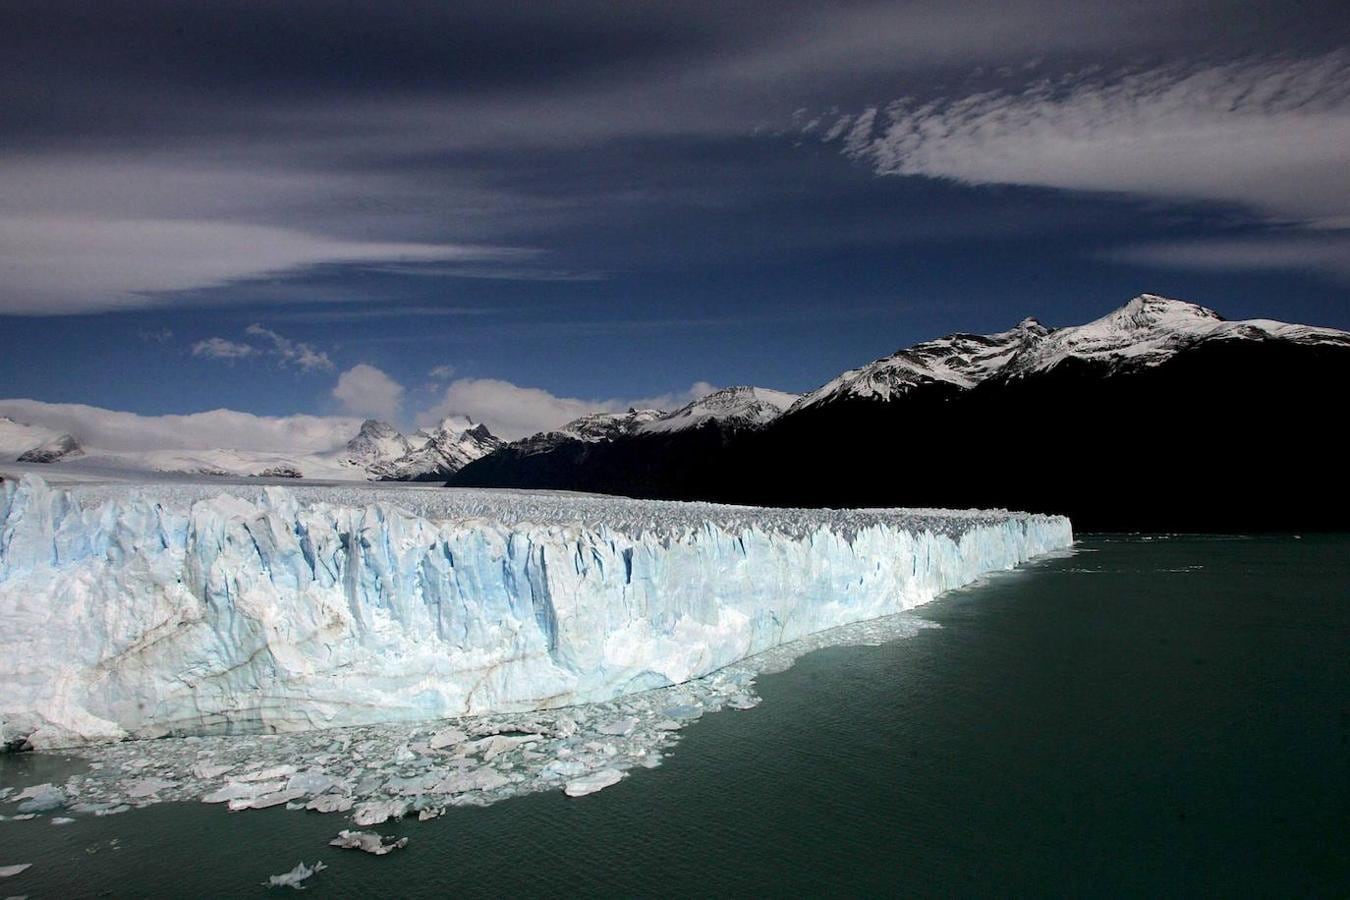 Perito Moreno (Argentina): El glaciar Perito Moreno está considerada la octava maravilla del mundo y no es para menos porque esta gran masa de hielo es un auténtico espectáculo para todo aquel que se acerque a admirarlo. Se trata de uno de los muchos glaciares que forman parte del Parque Nacional Los Glaciares y está ubicado en la provincia de Santa Cruz, al sudoeste de la Argentina y en la región de Patagonia. Comprende una superficie de 6.000 km2.